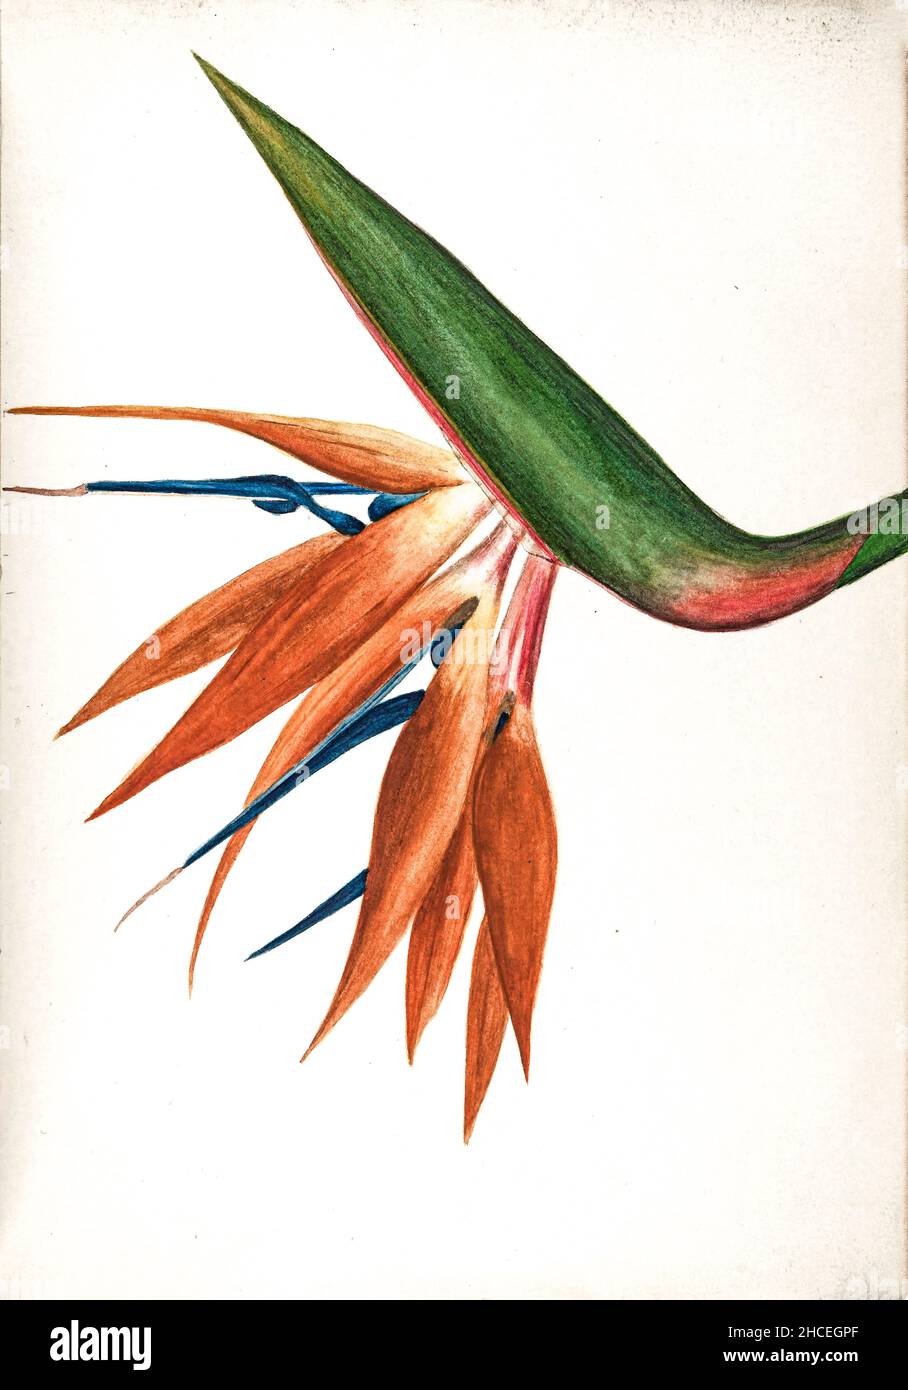 Oiseau de paradis (Strelitzia) de Sketchbook No. 18 - fruits et fleurs des Bermudes par Helen Sharp 1892-1903 Banque D'Images